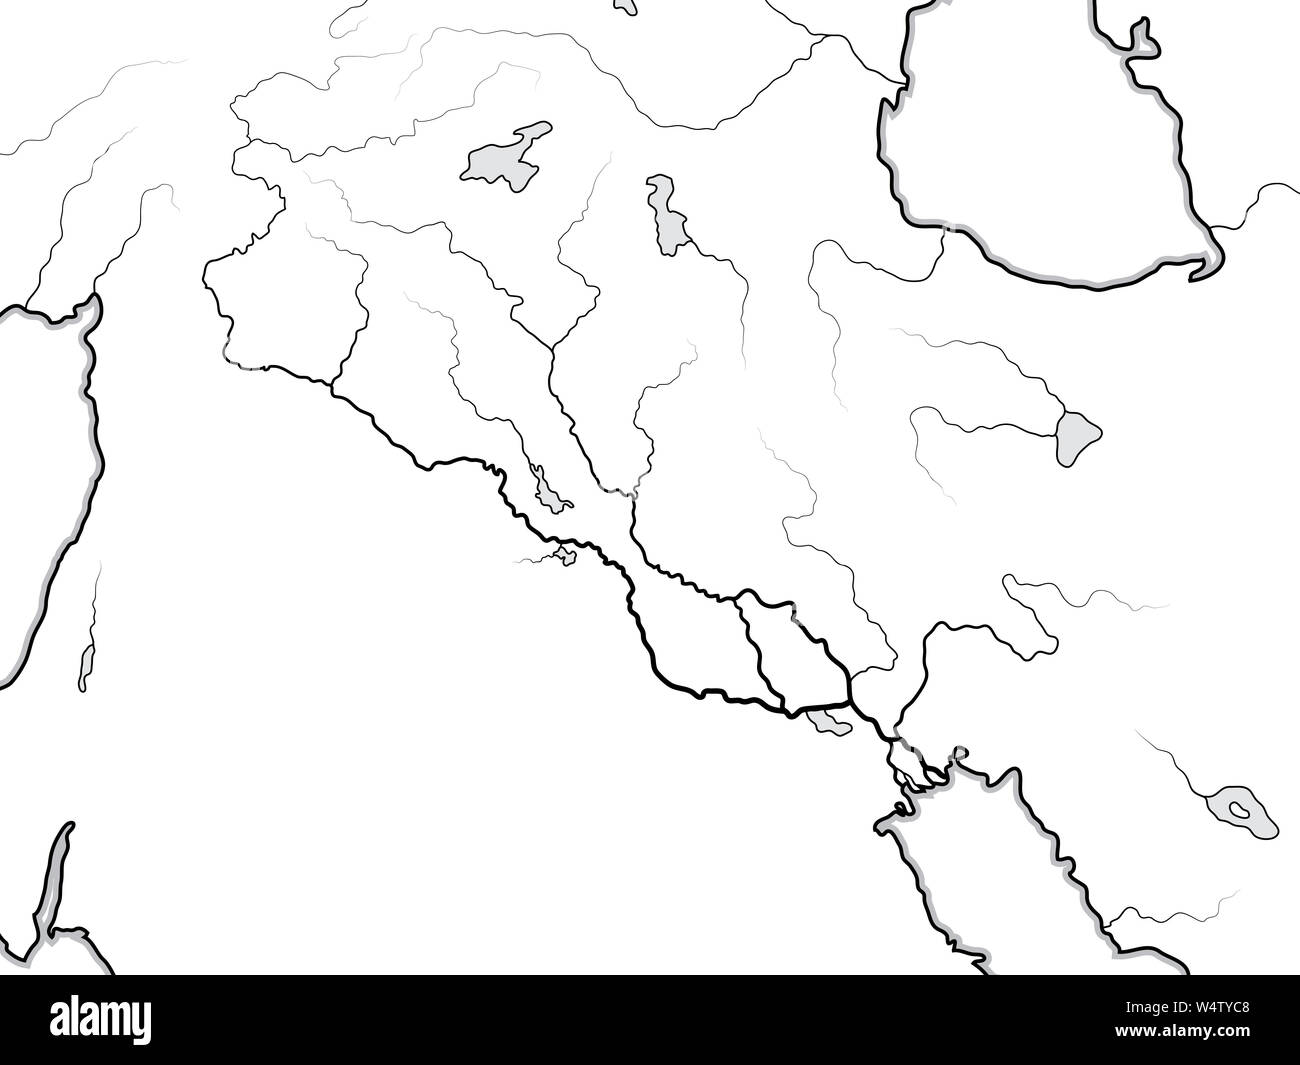 Mappa mondiale del Tigri e l Eufrate valle: Iraq, Siria, Armenia, Kurdistan, Iran, Levante, il Vicino e Medio Oriente, Golfo Persico. Grafico geografica. Foto Stock